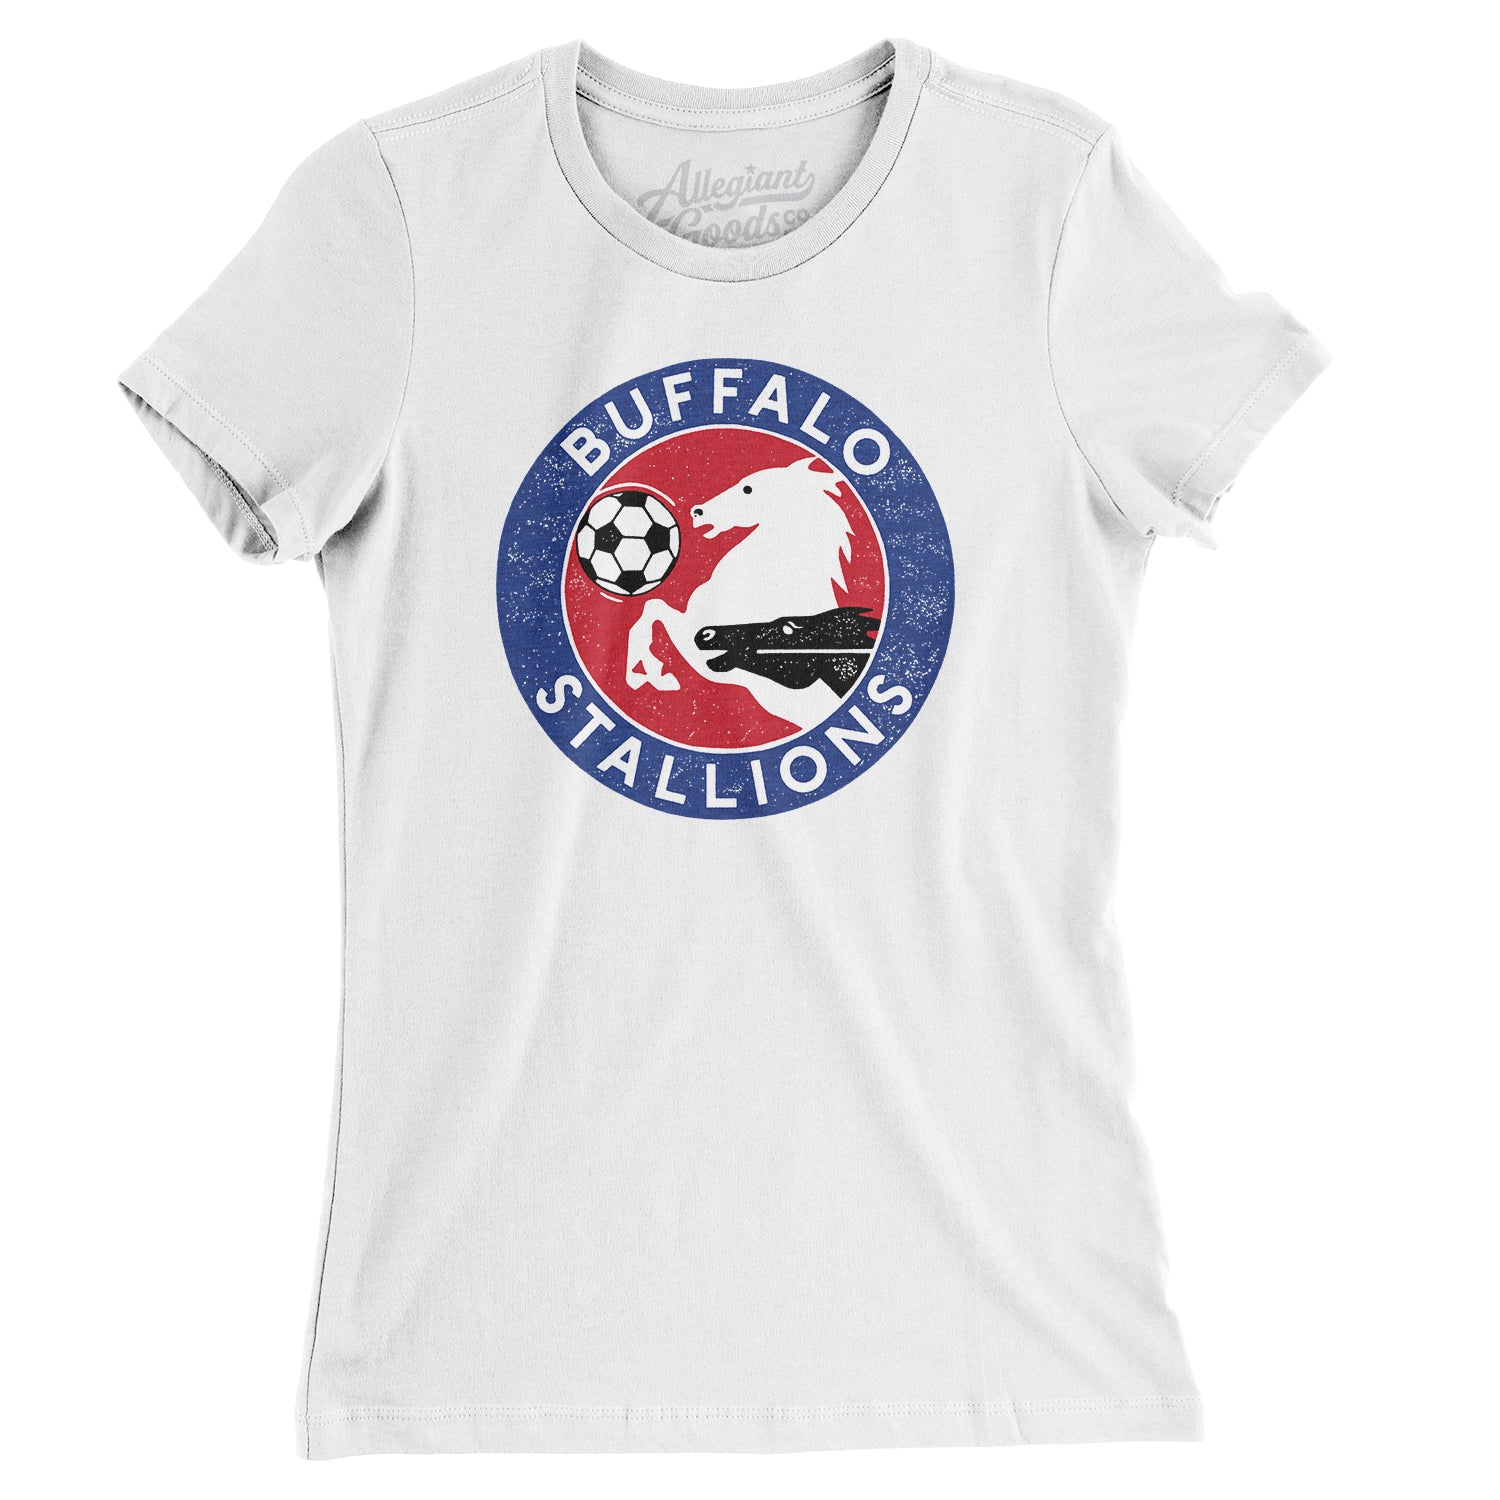 Mtr Buffalo Stallions Soccer Women's T-Shirt White / 2XL